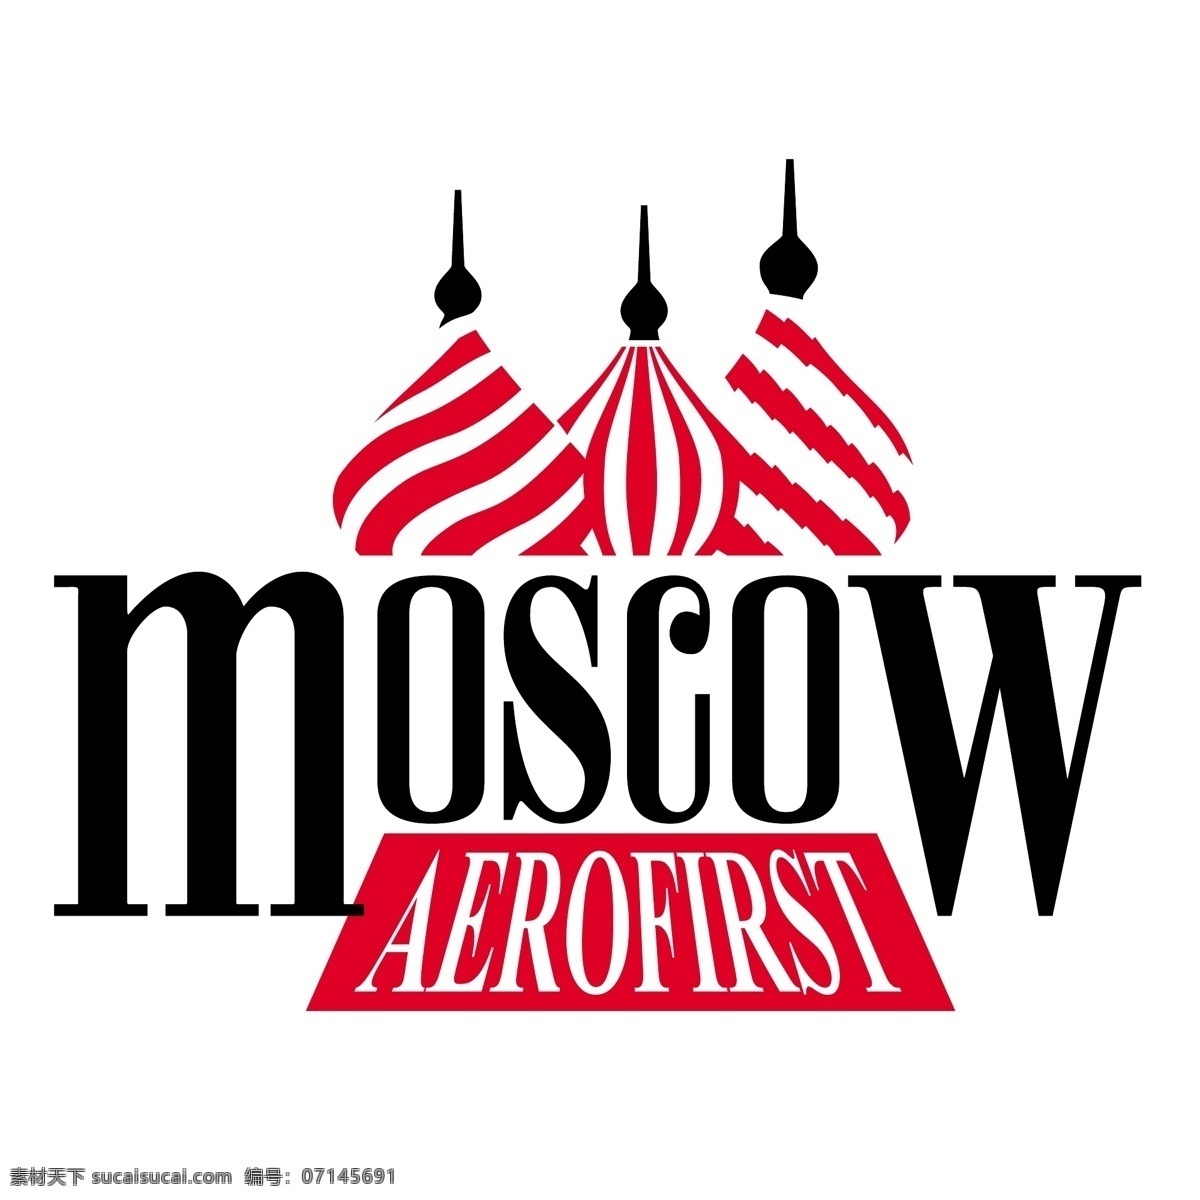 自由 aerofirst 莫斯科 标志 标识 白色